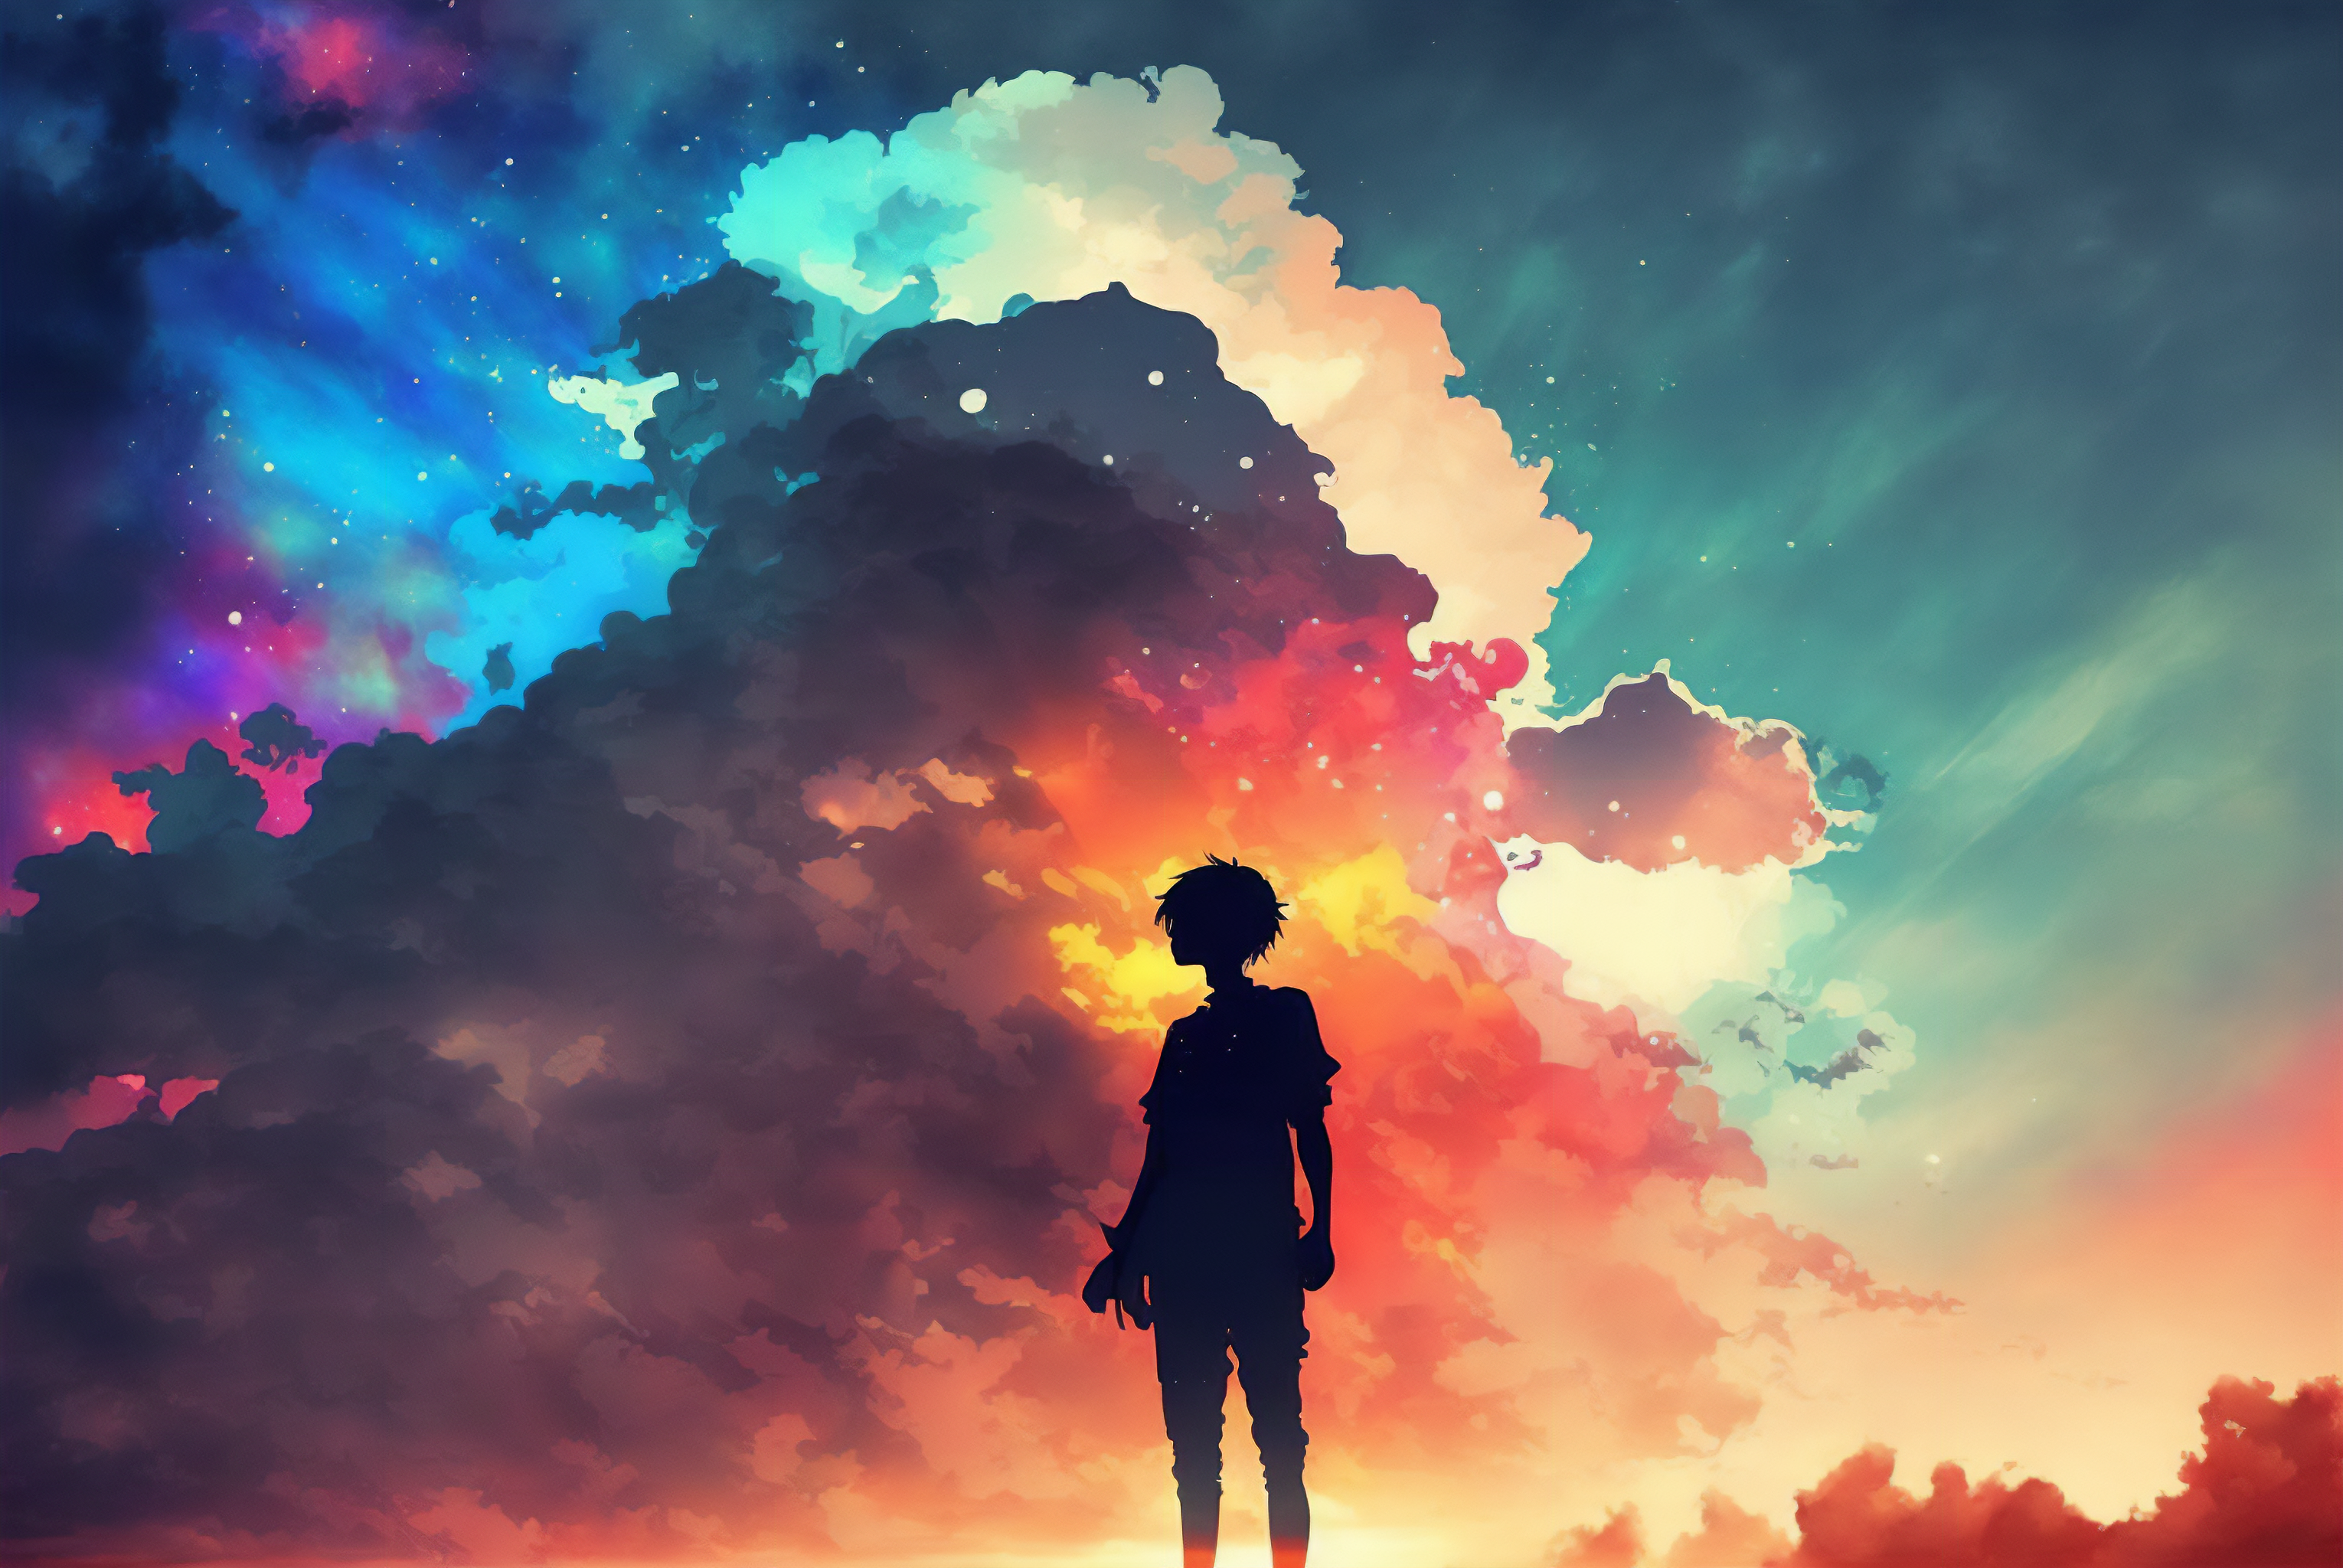 Hình nền đám mây AI của Studio Ghibli là một tác phẩm nghệ thuật tuyệt đẹp. Hãy ngắm nhìn những hình ảnh thiên nhiên đẹp như tranh vẽ, các đám mây mịn màng tràn đầy không khí trong lành. Những hình nền này chắc chắn sẽ mang đến cho bạn một cảm giác đầy thư giãn.